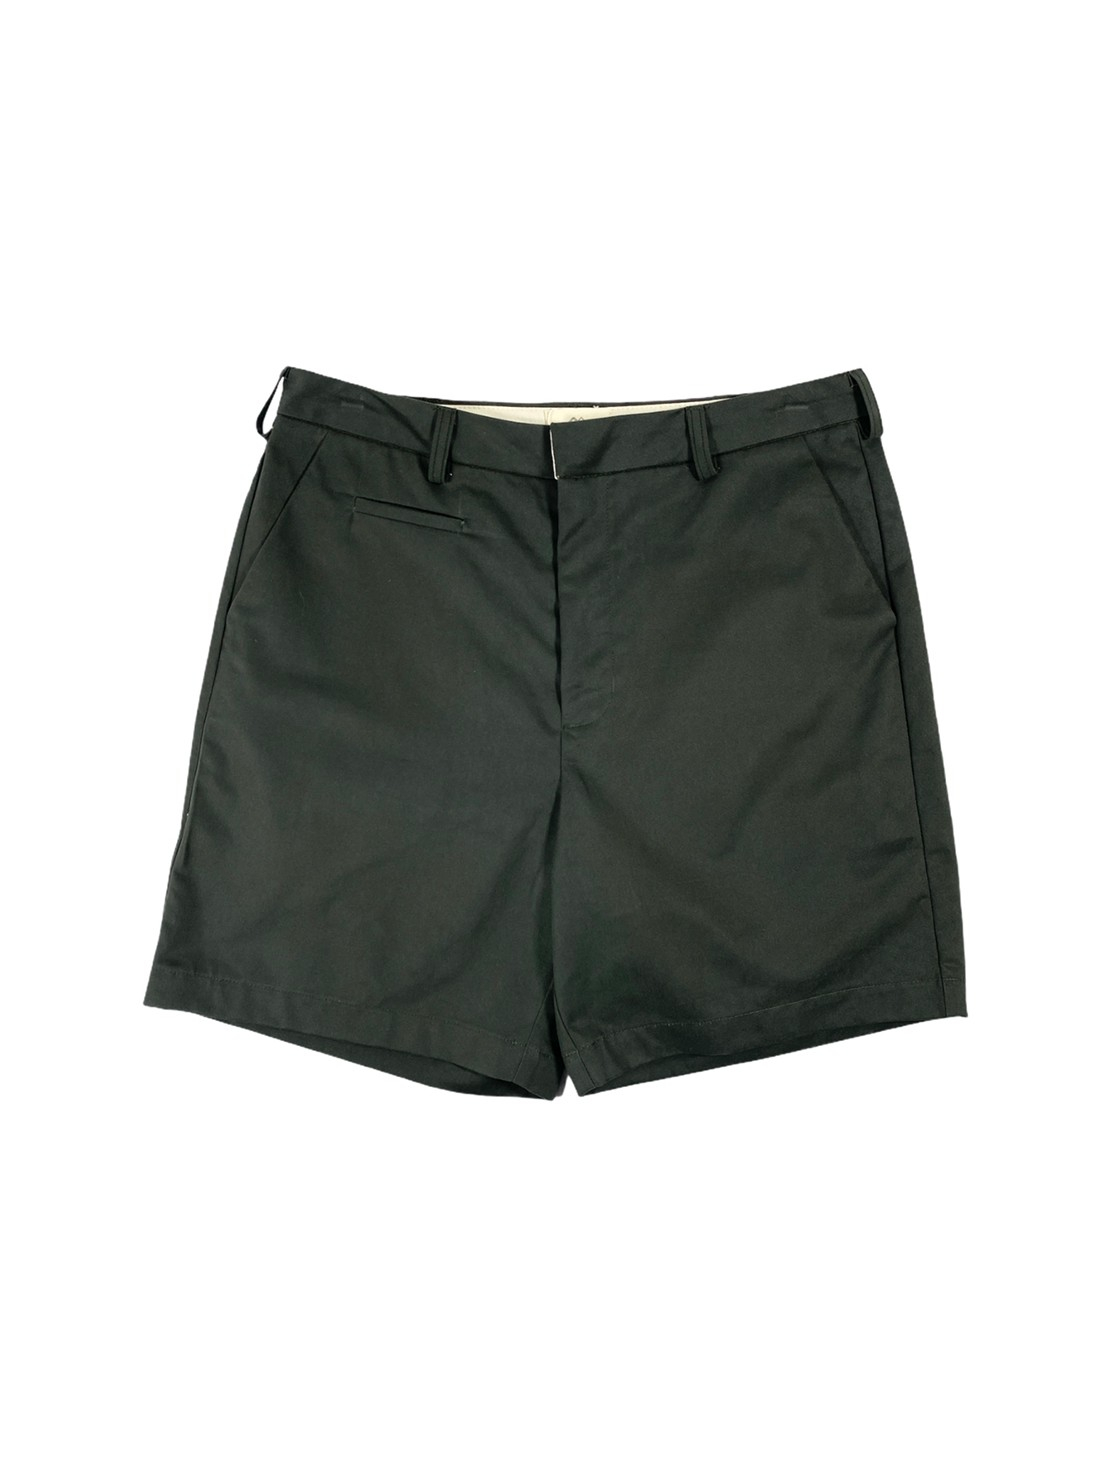 Chino Shorts (Dark Gray)